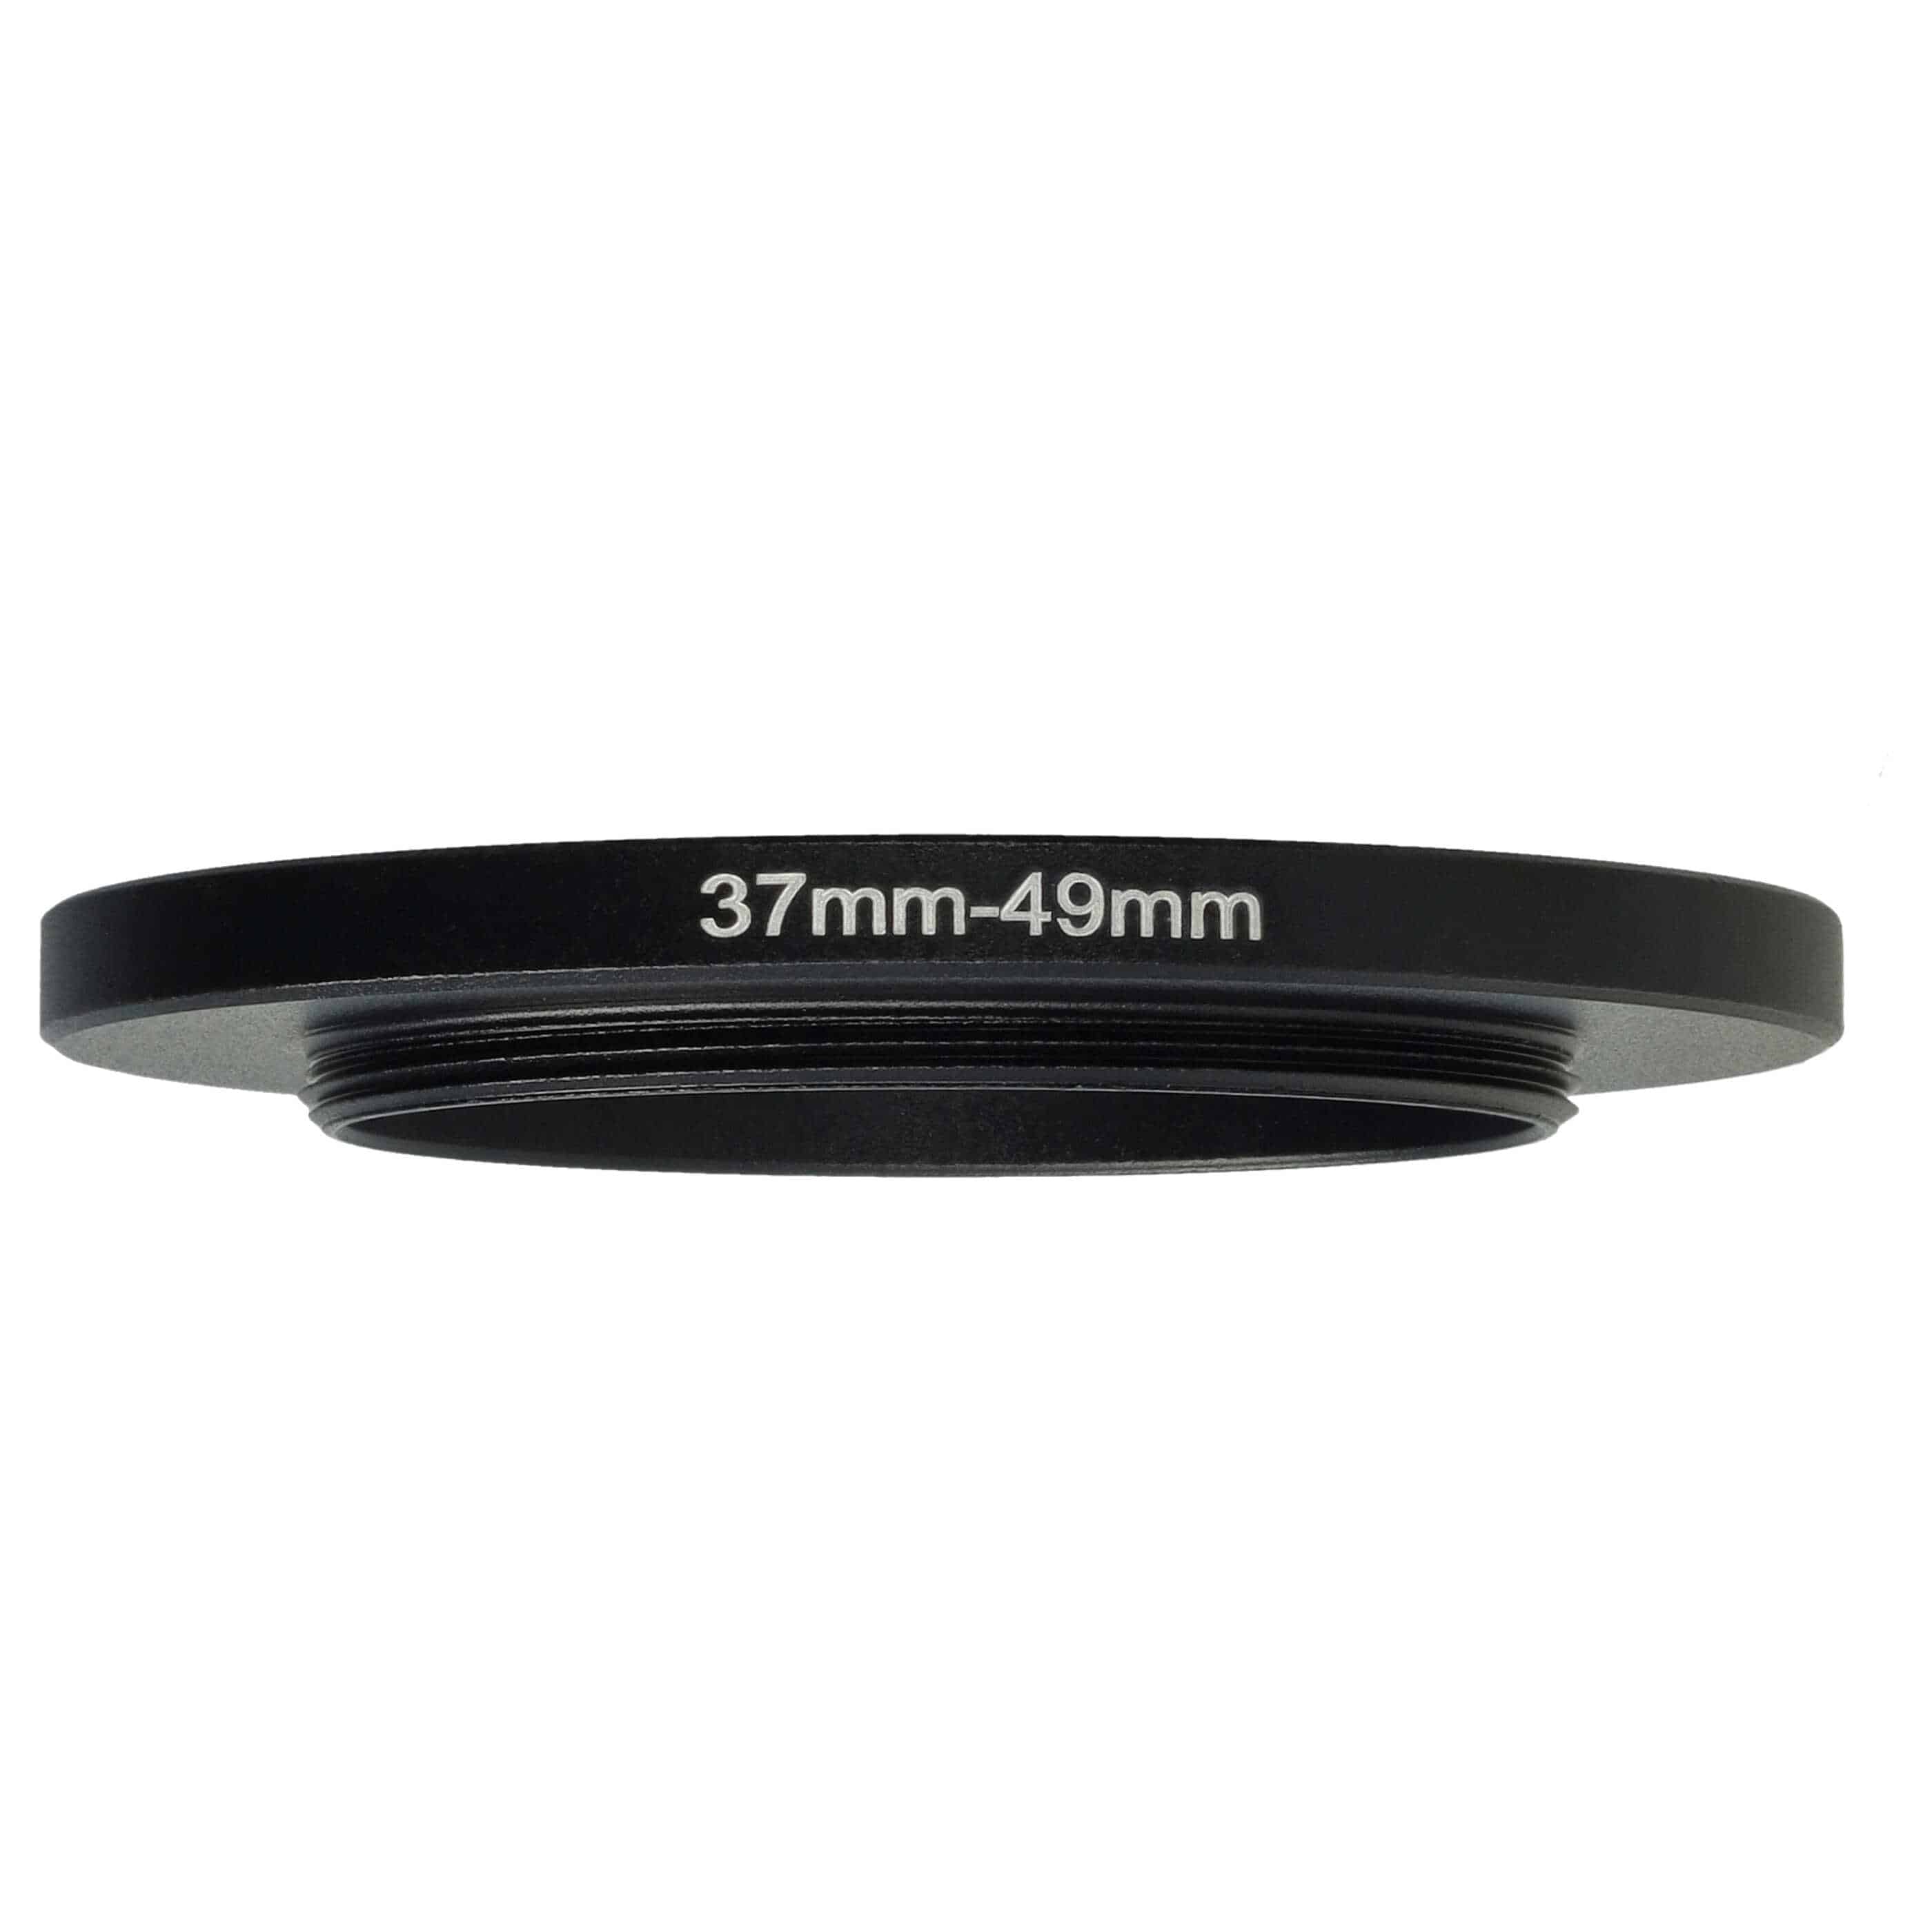 Redukcja filtrowa adapter 37 mm na 49 mm na różne obiektywy 